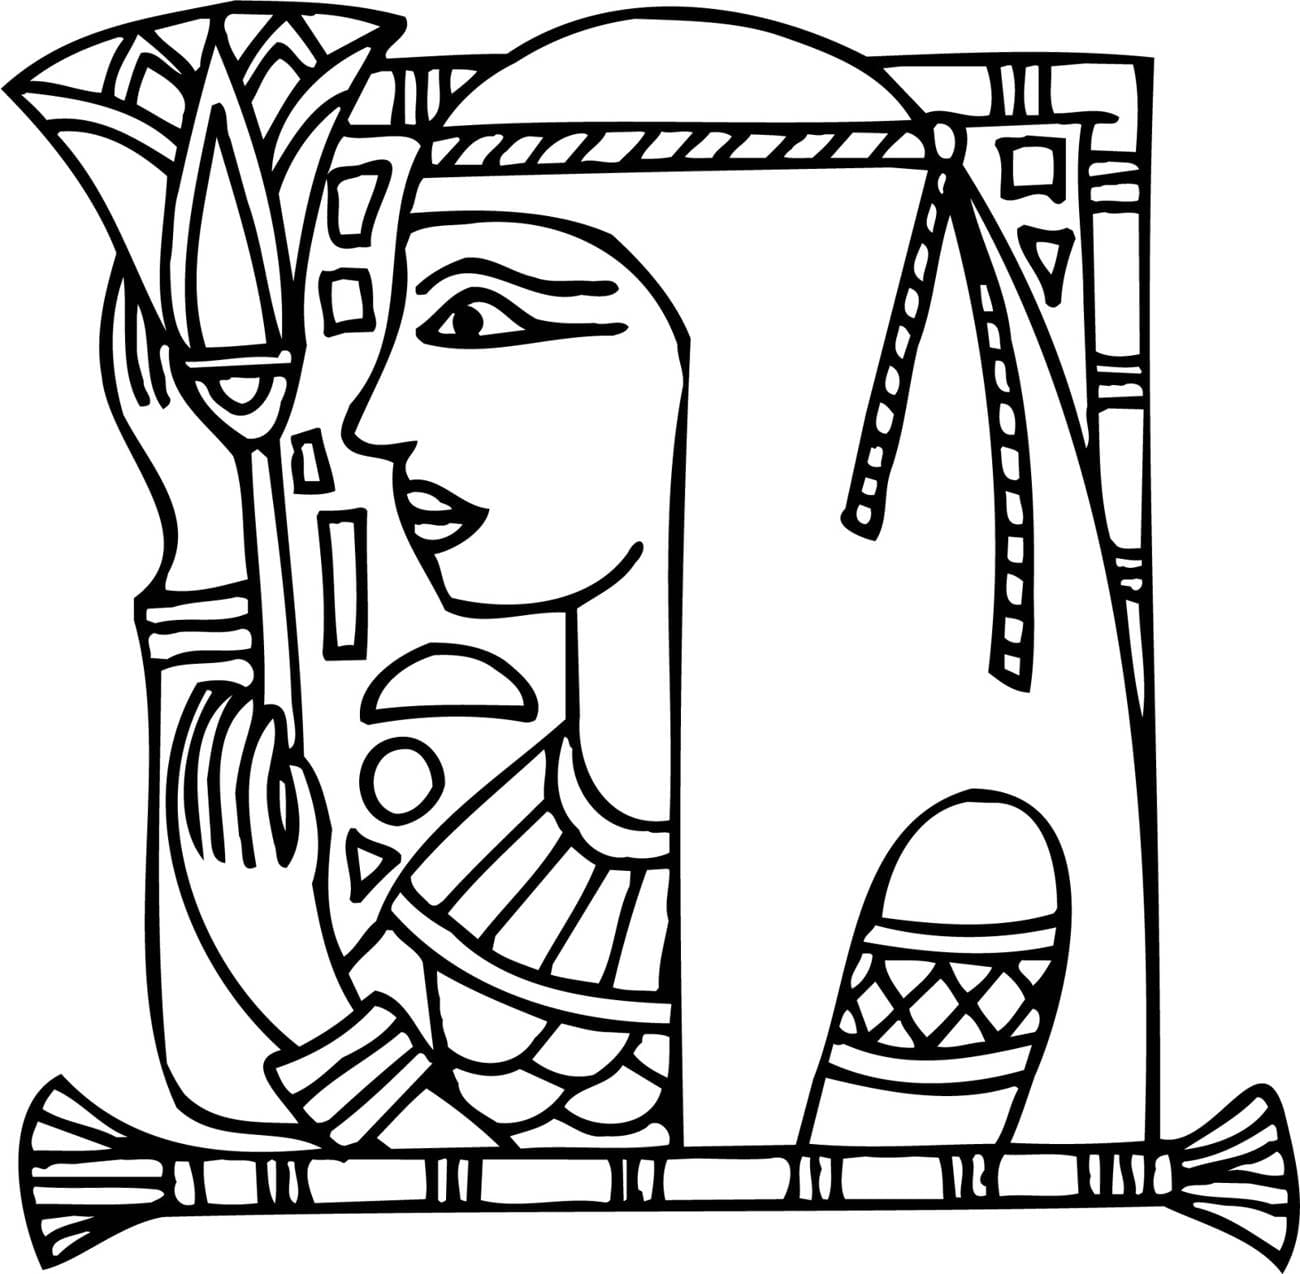 Осирис — Раскрась и напиши — Египетские раскраски